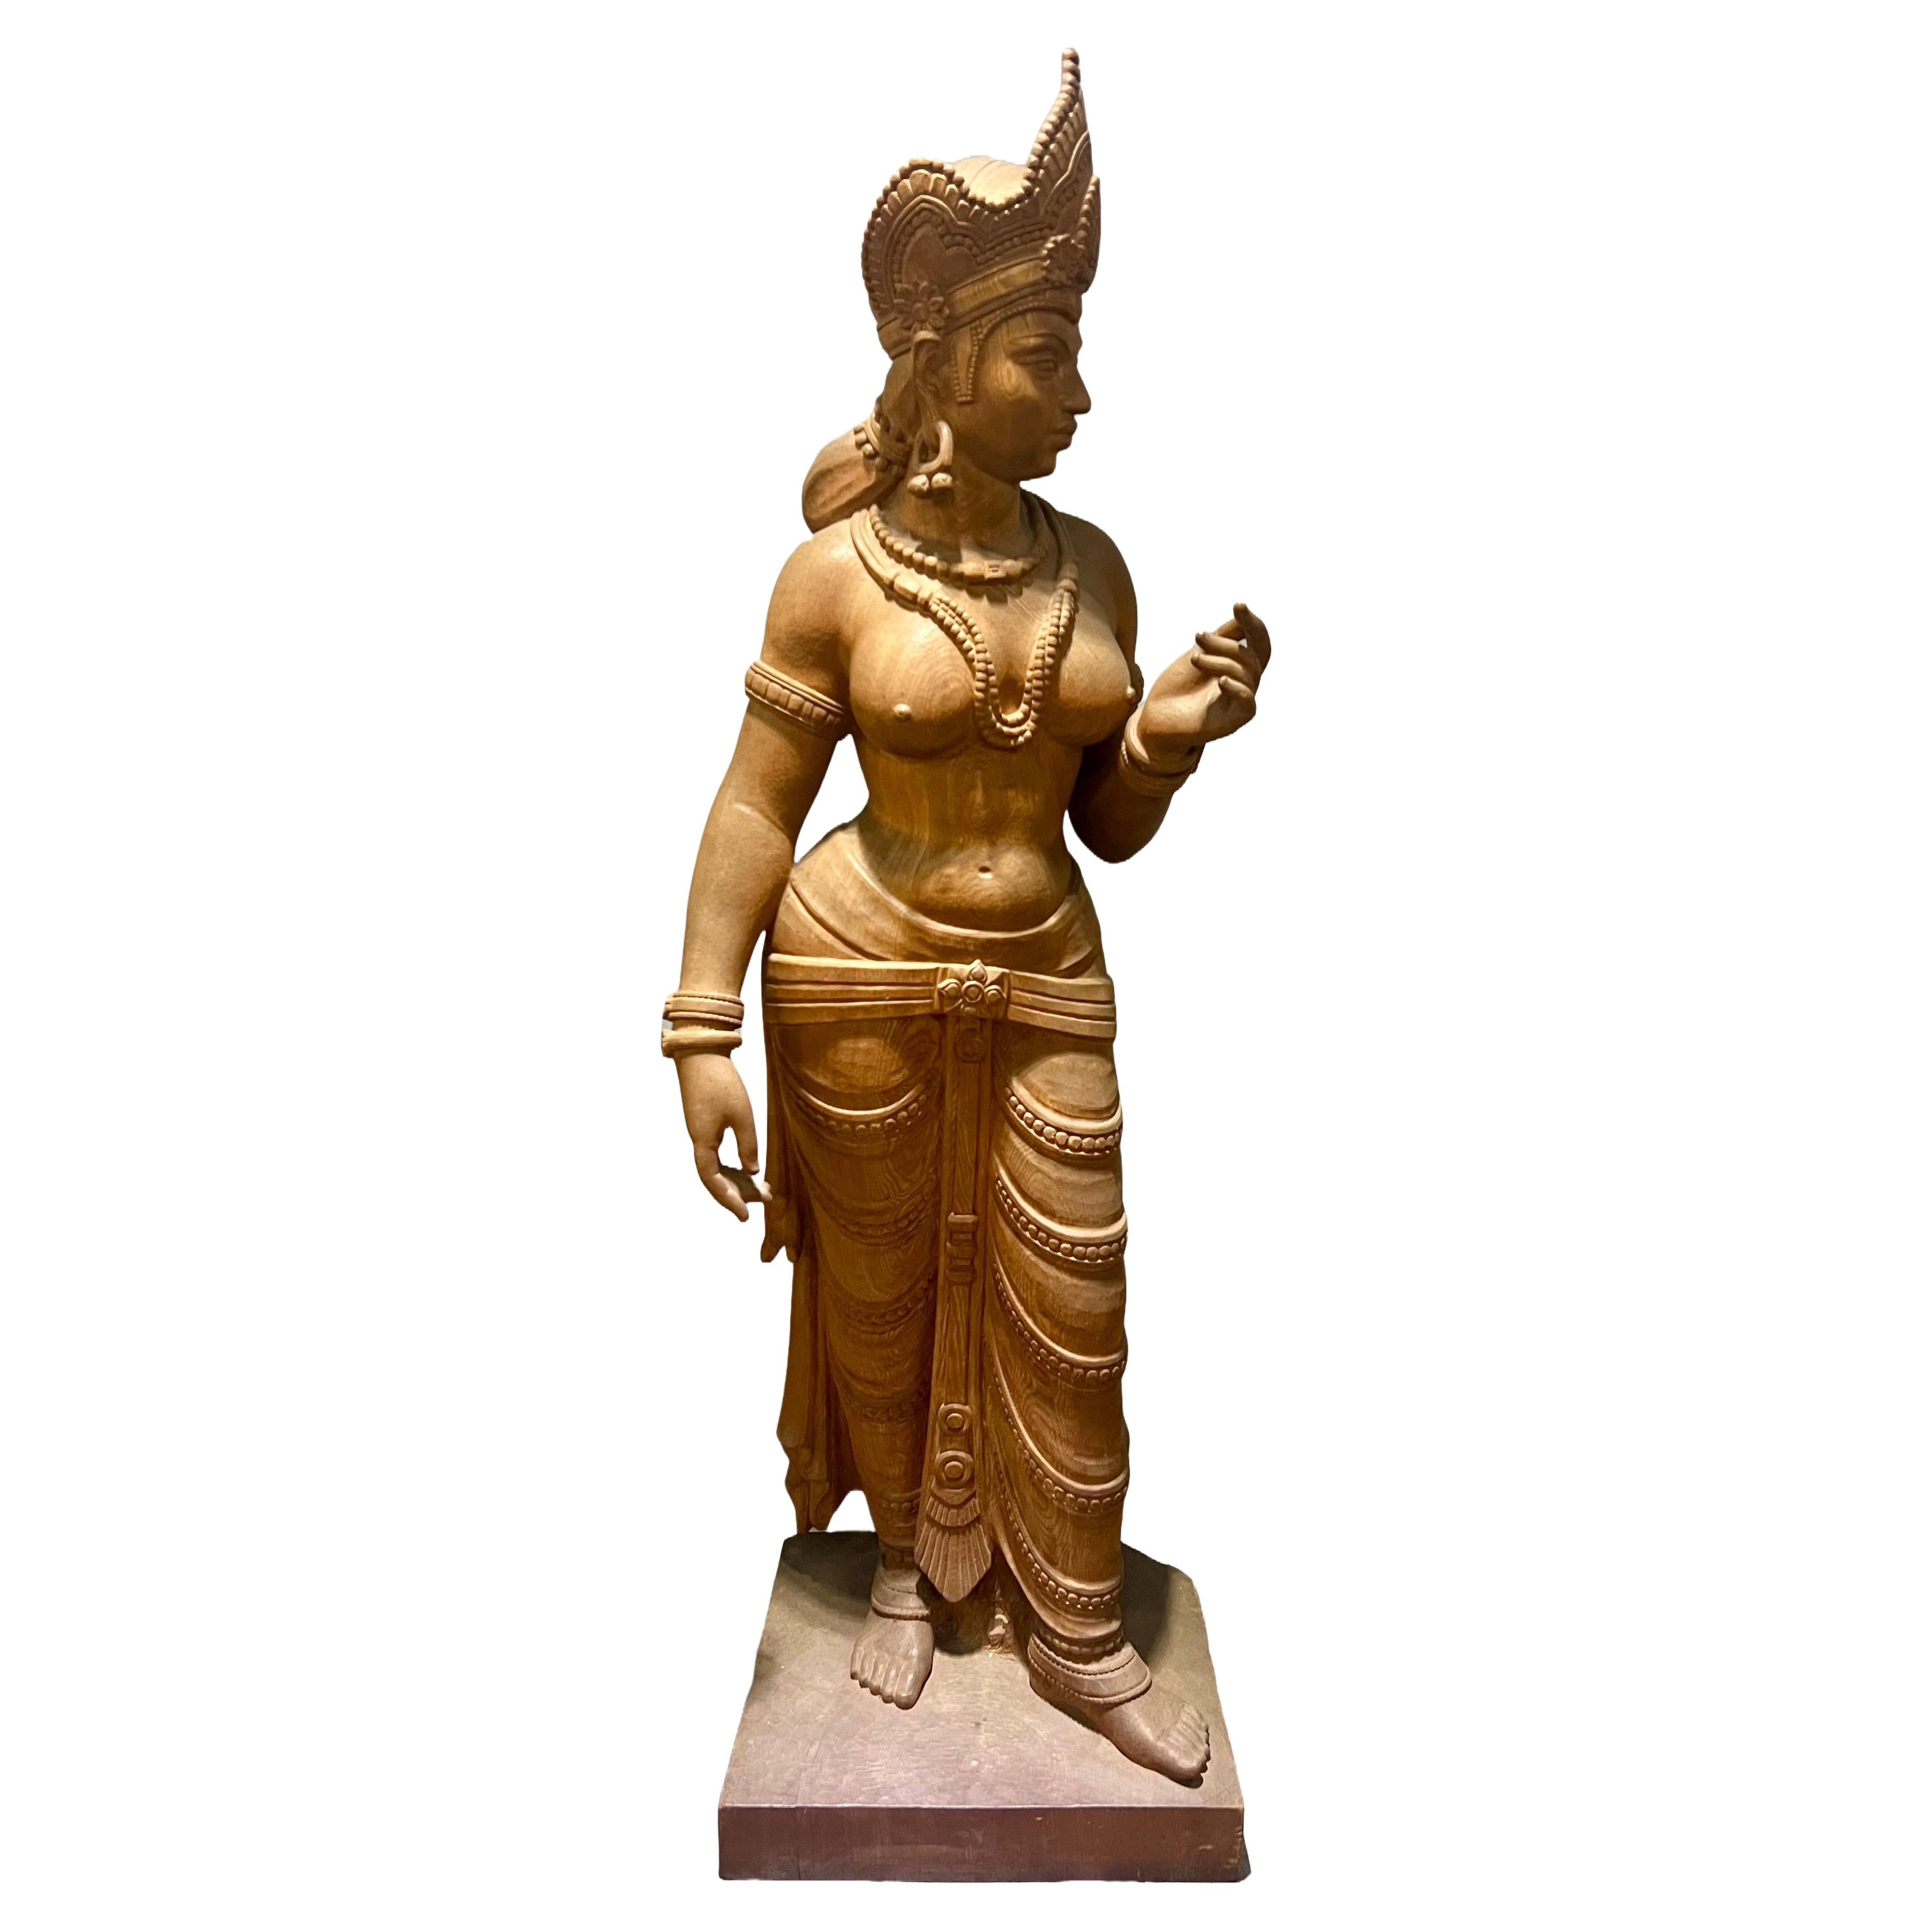 Eine lebensgroße geschnitzte Holzskulptur der hinduistischen Göttin Parvati